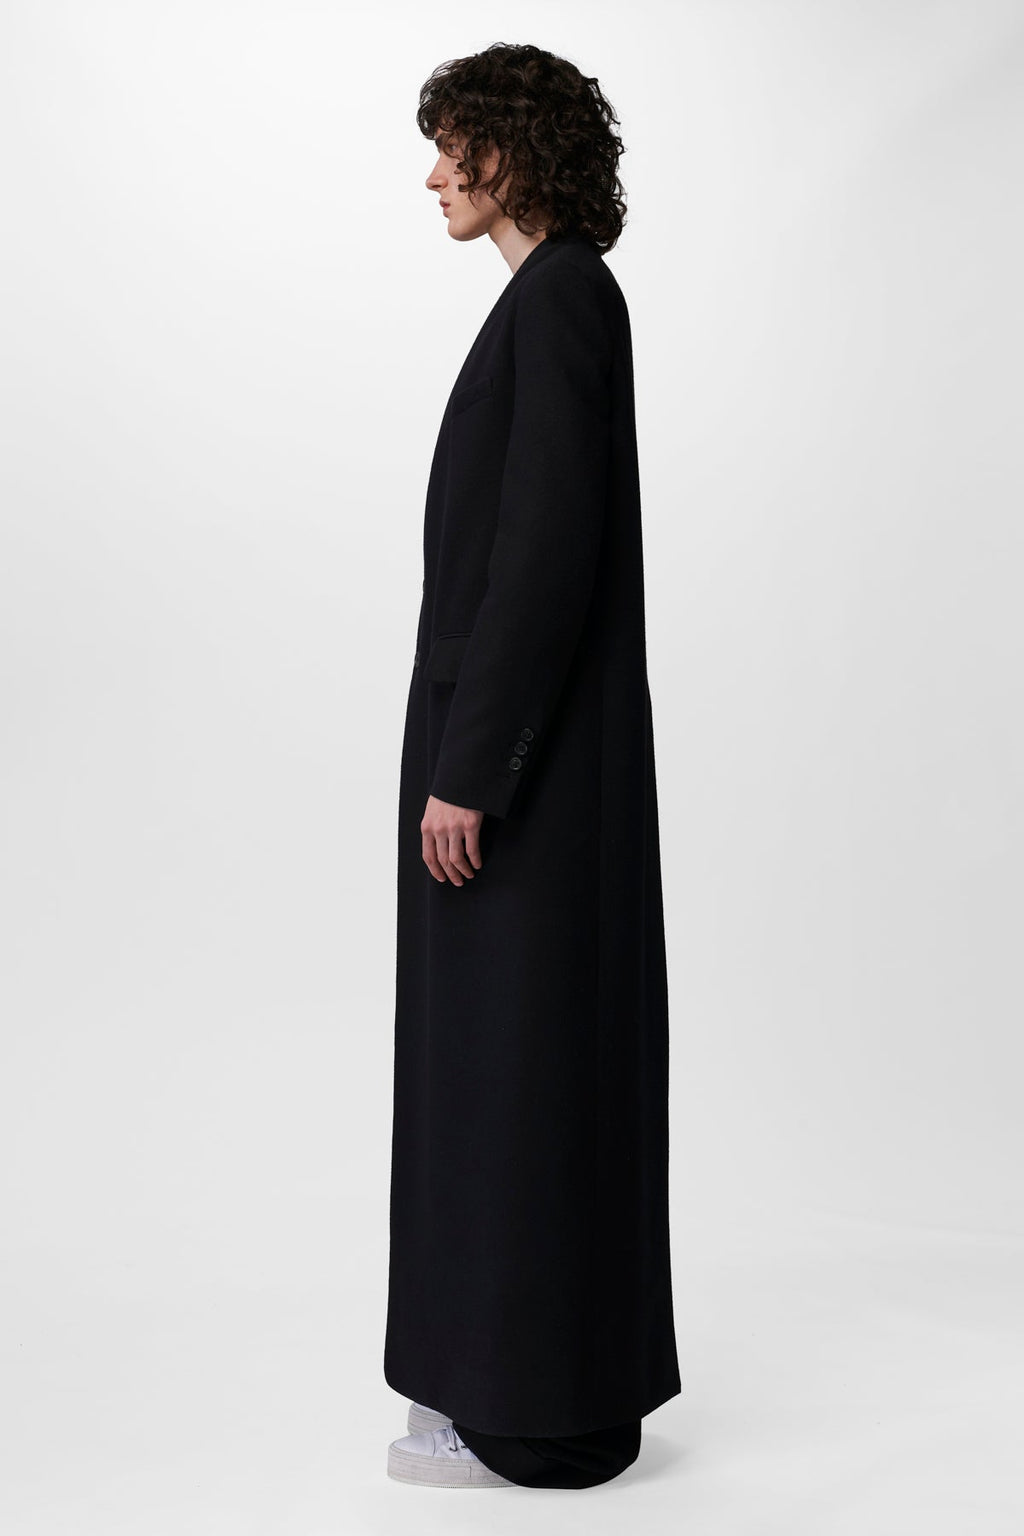 Demeulemeester Francois Coat Tailored – Standard Ann